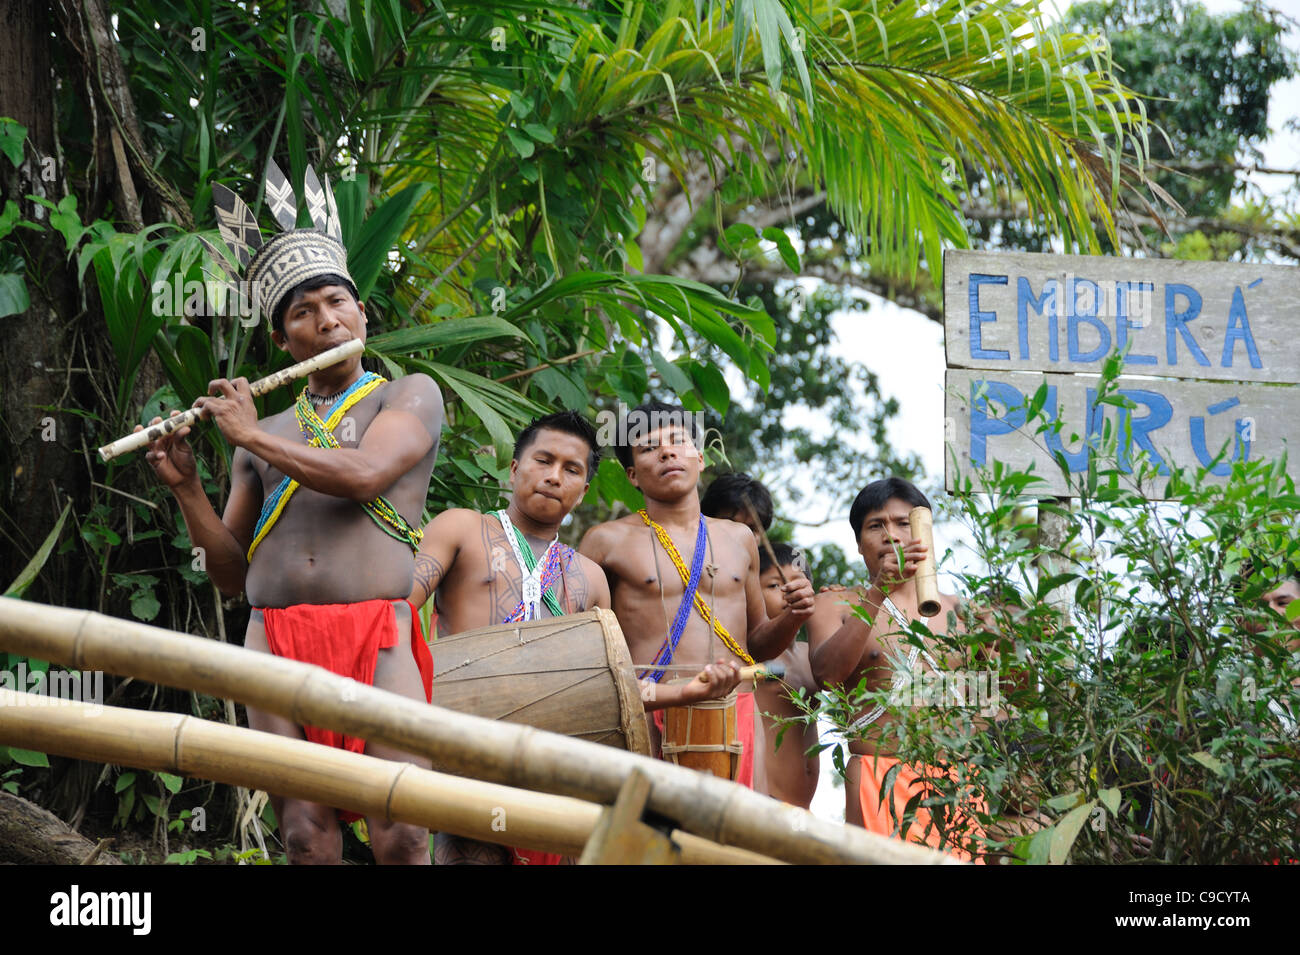 Embera des hommes indiens jouant la flûte et le tambour accueillant des touristes à la communauté autochtone Emberá Purú au Panama Banque D'Images